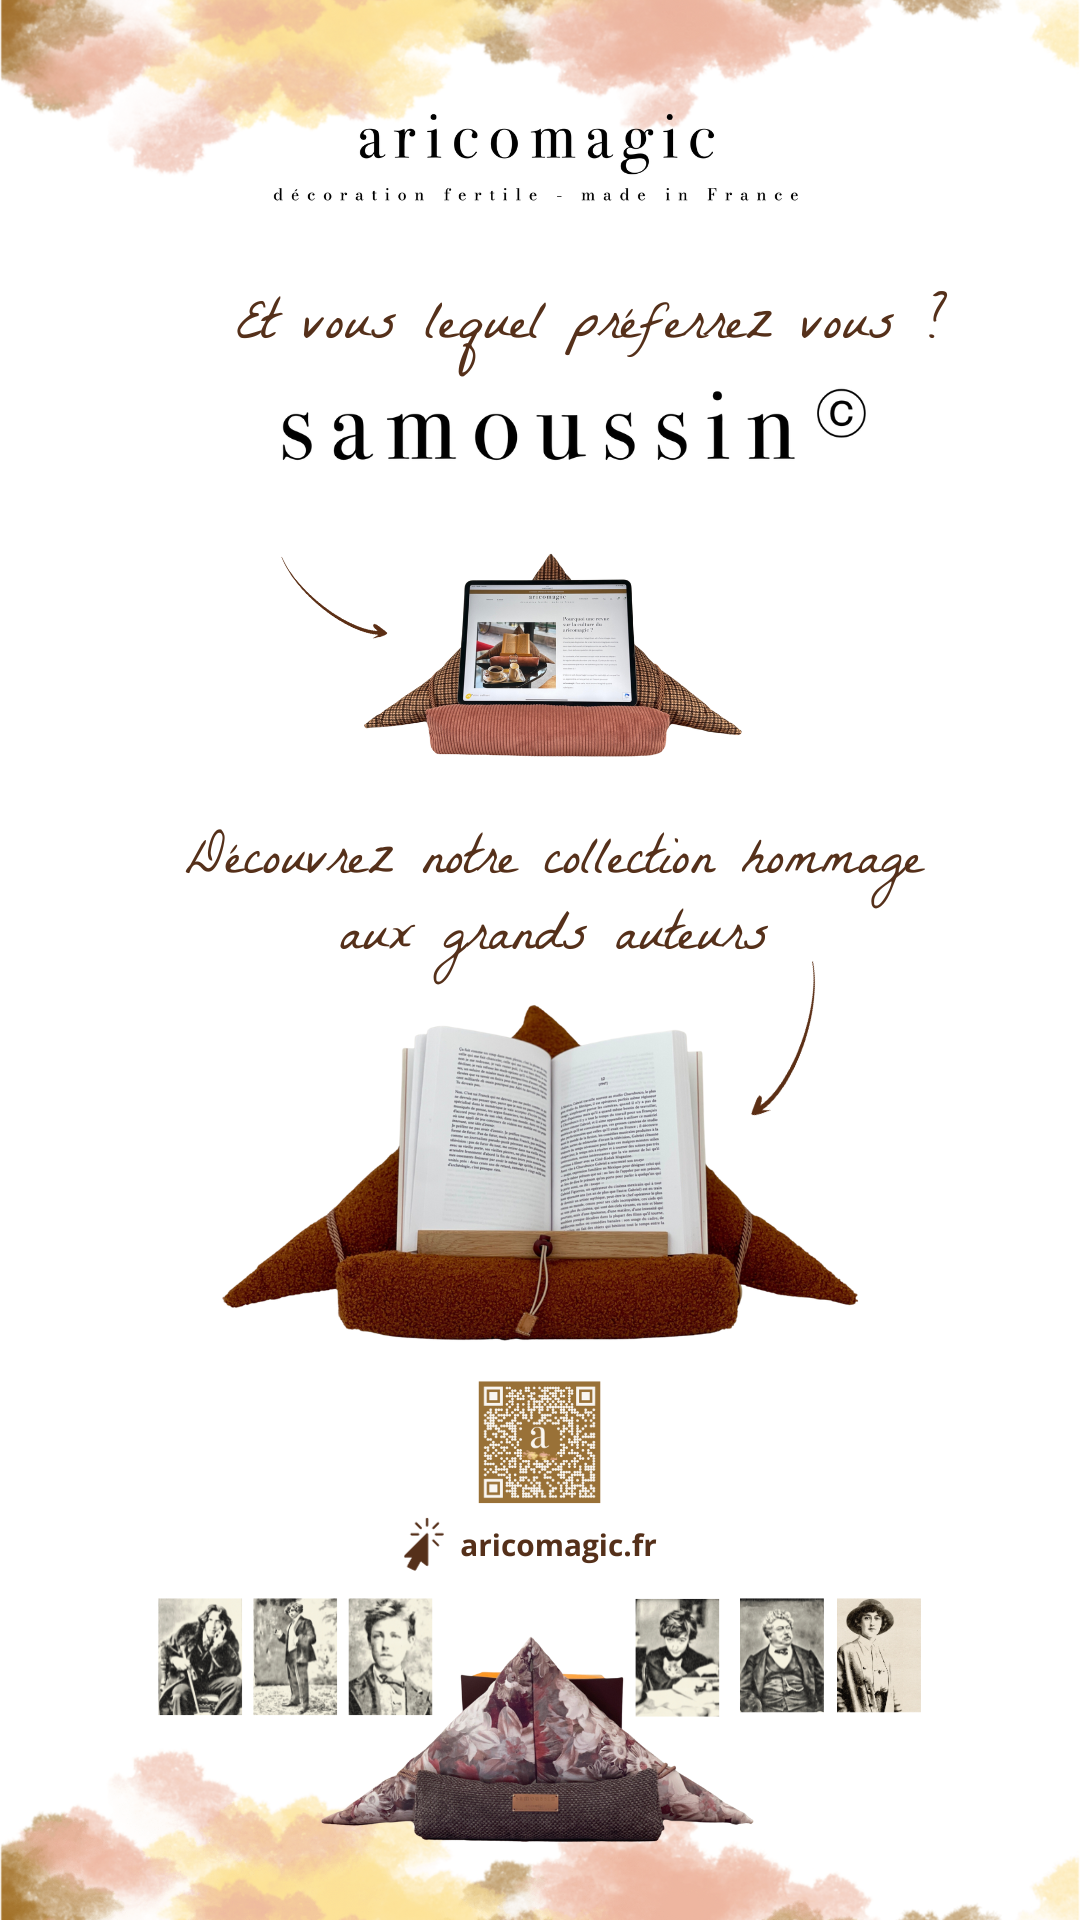 Porte-livre samoussin. support de livre ergonomique pour lire sans effort.